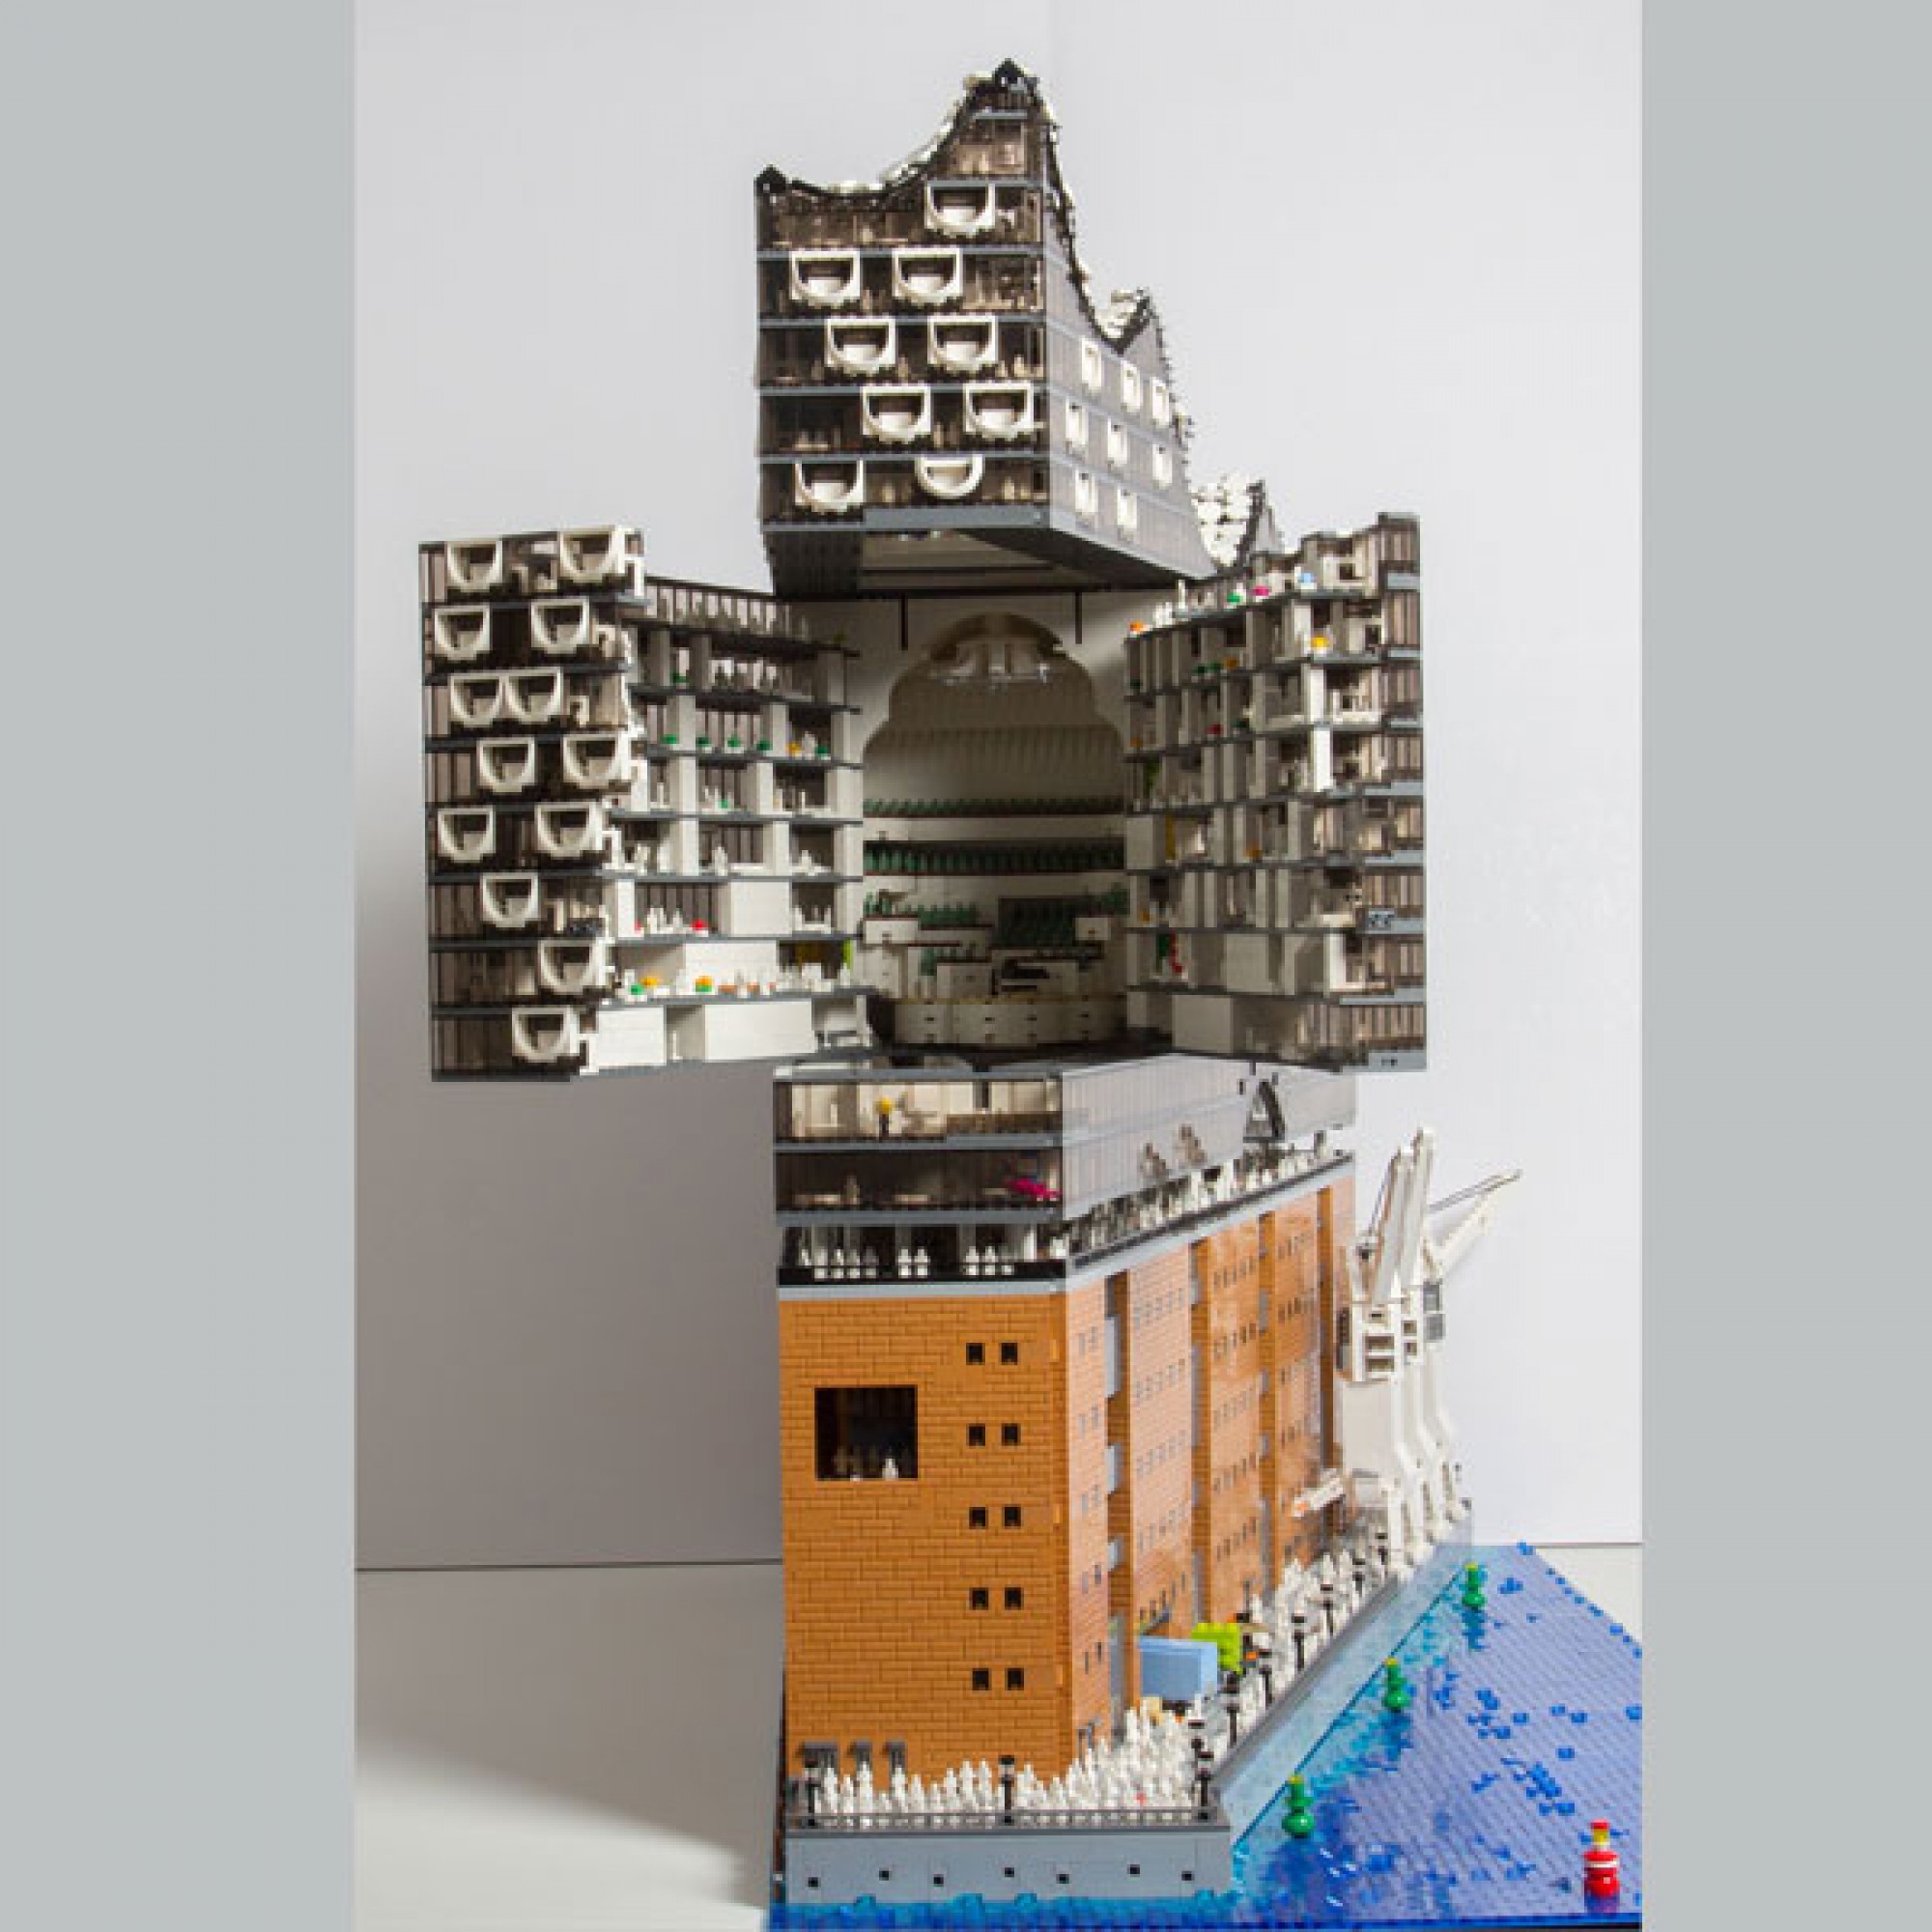 Die Elbphilharmonie, nachgebaut aus Legosteinen (Quelle: brickmonkey.net)